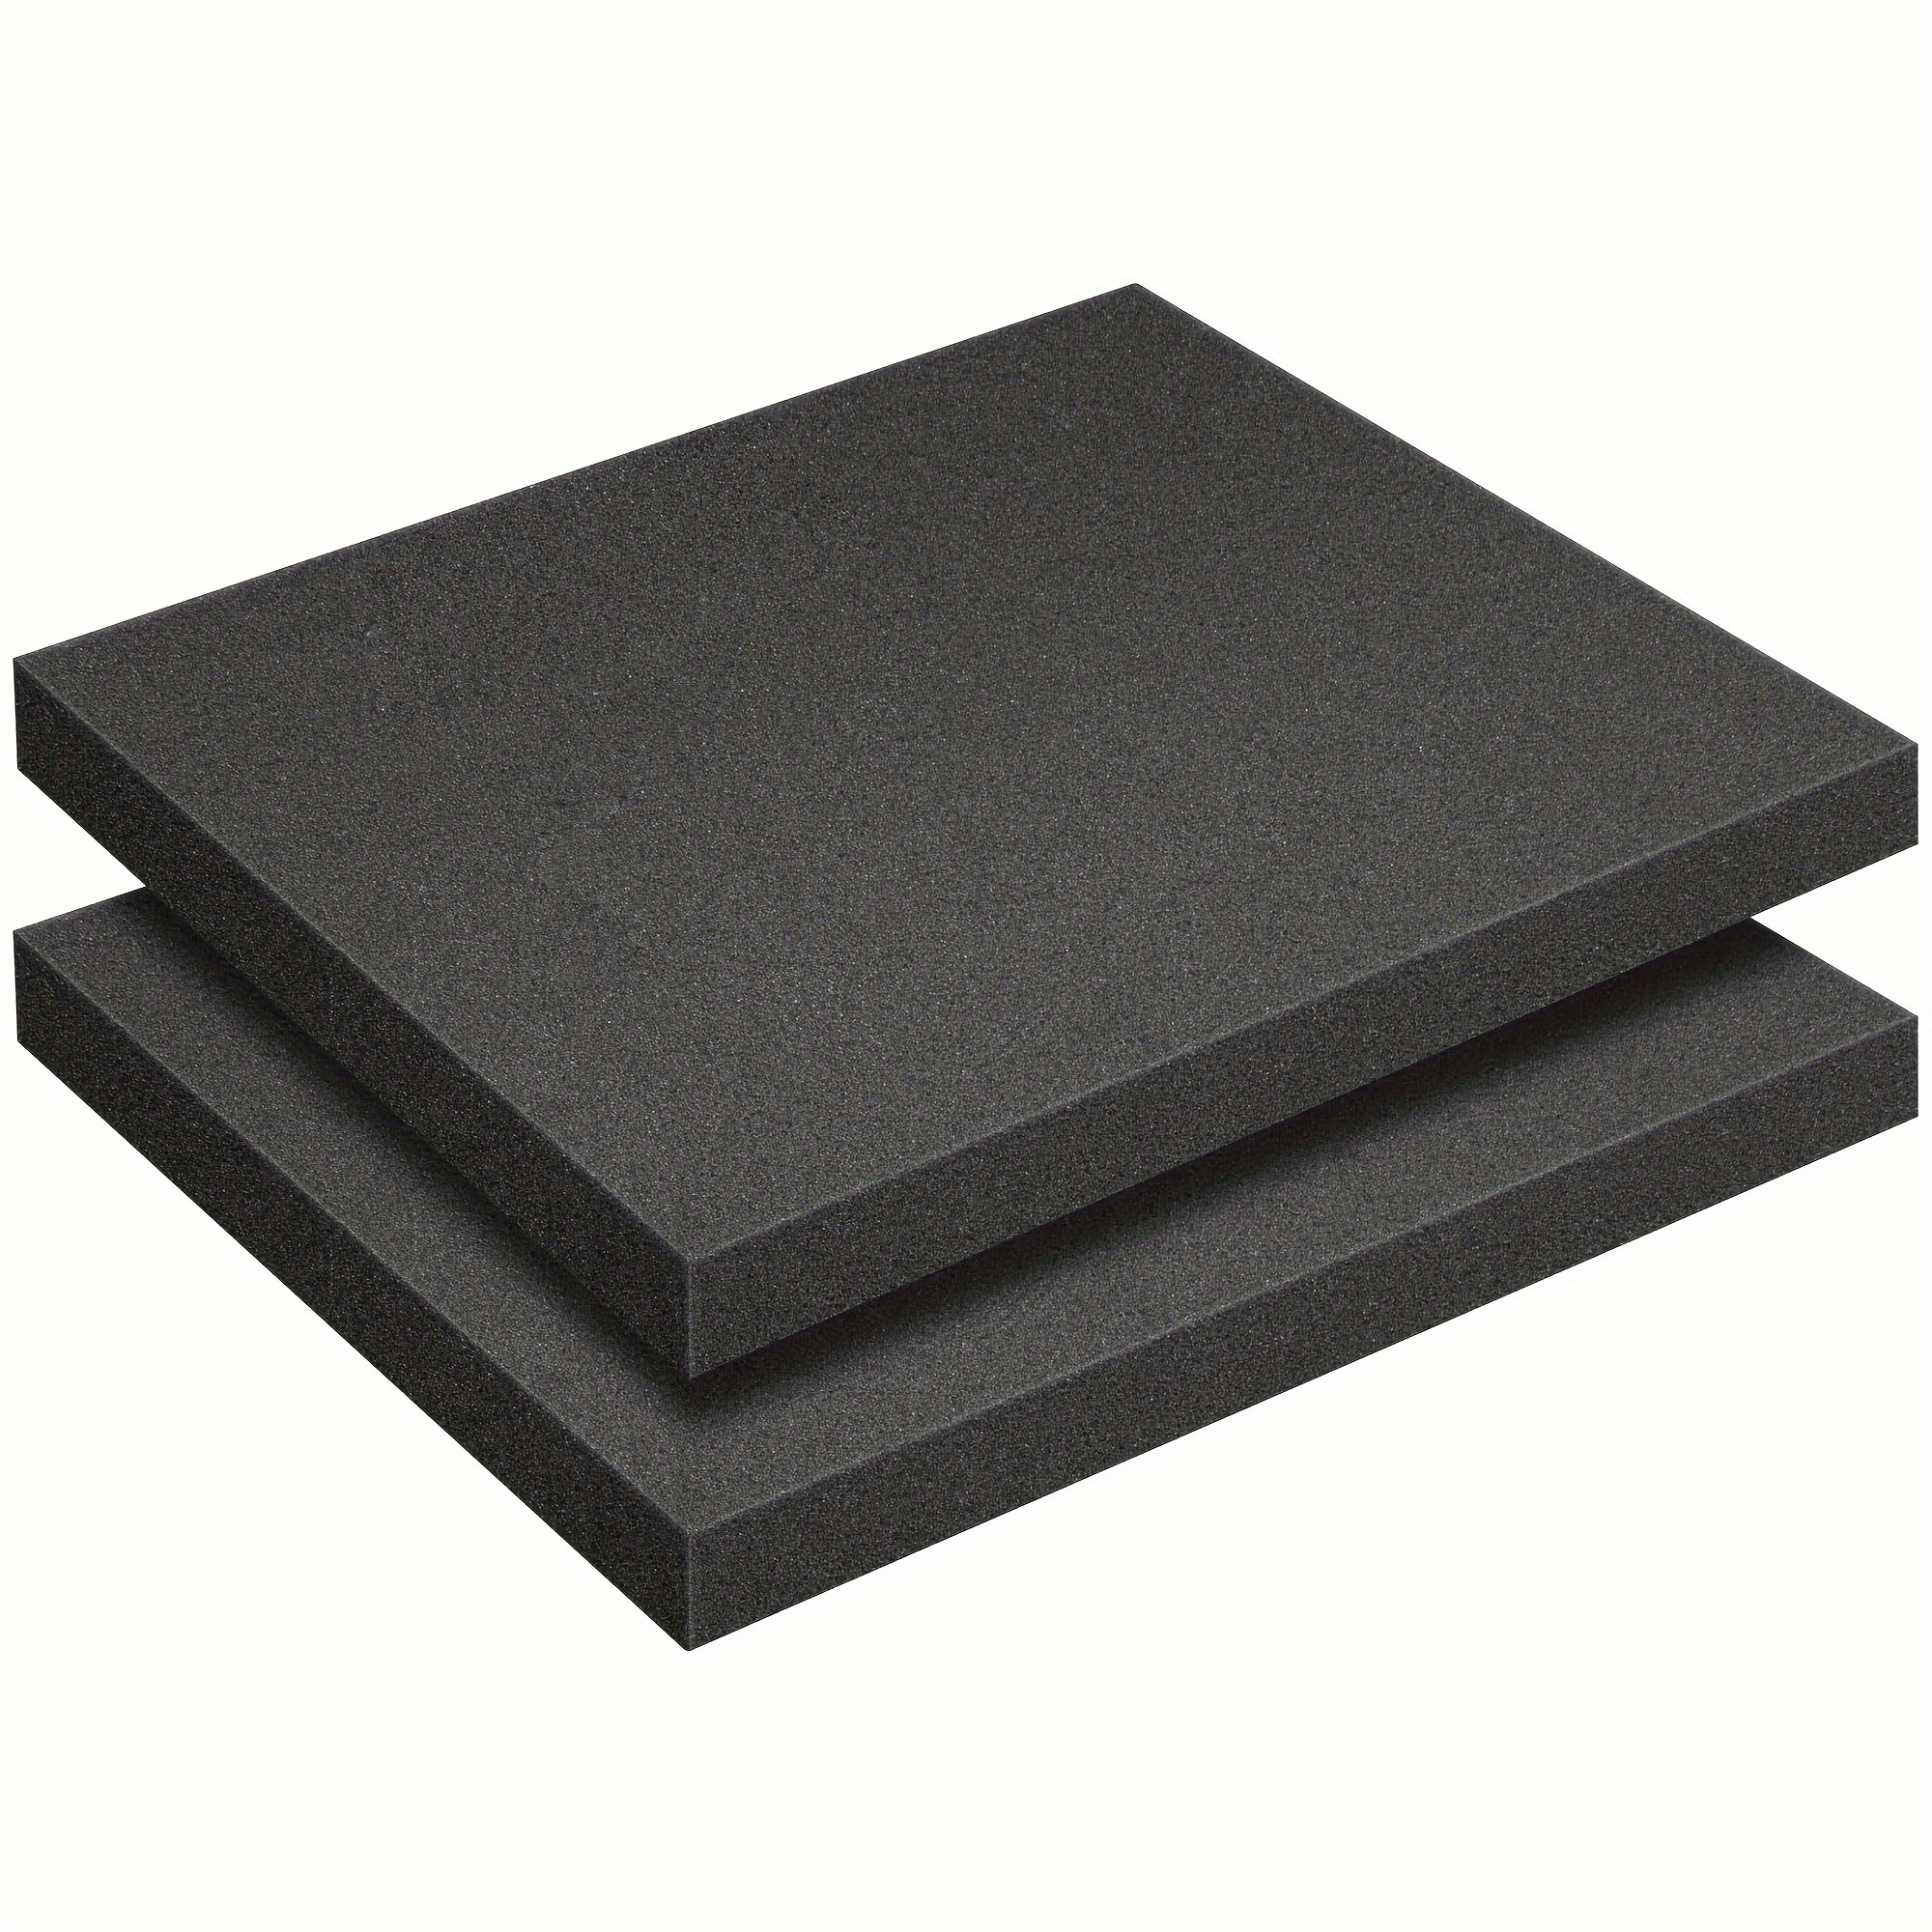 5 Packs Adhesive Foam Padding Sheets 1/4 Thick x 8 Long x 12 Wide EVA  Foam Sheet Self Stick Anti Vibration Pads 